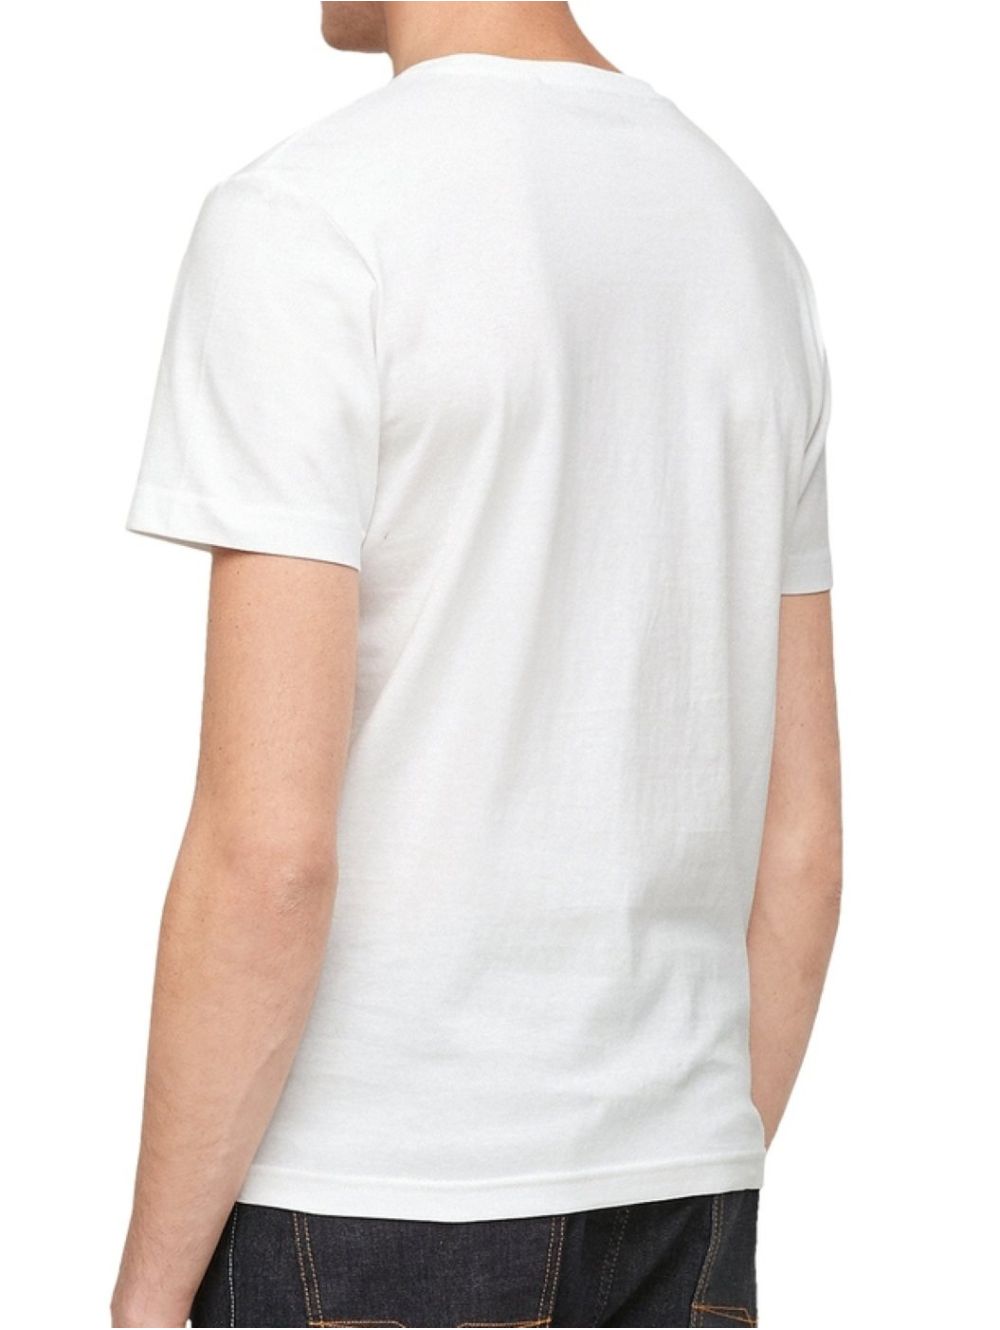 Men\'s white short-sleeved T-Shirt S.OLIVER 2057432-0100 White jersey